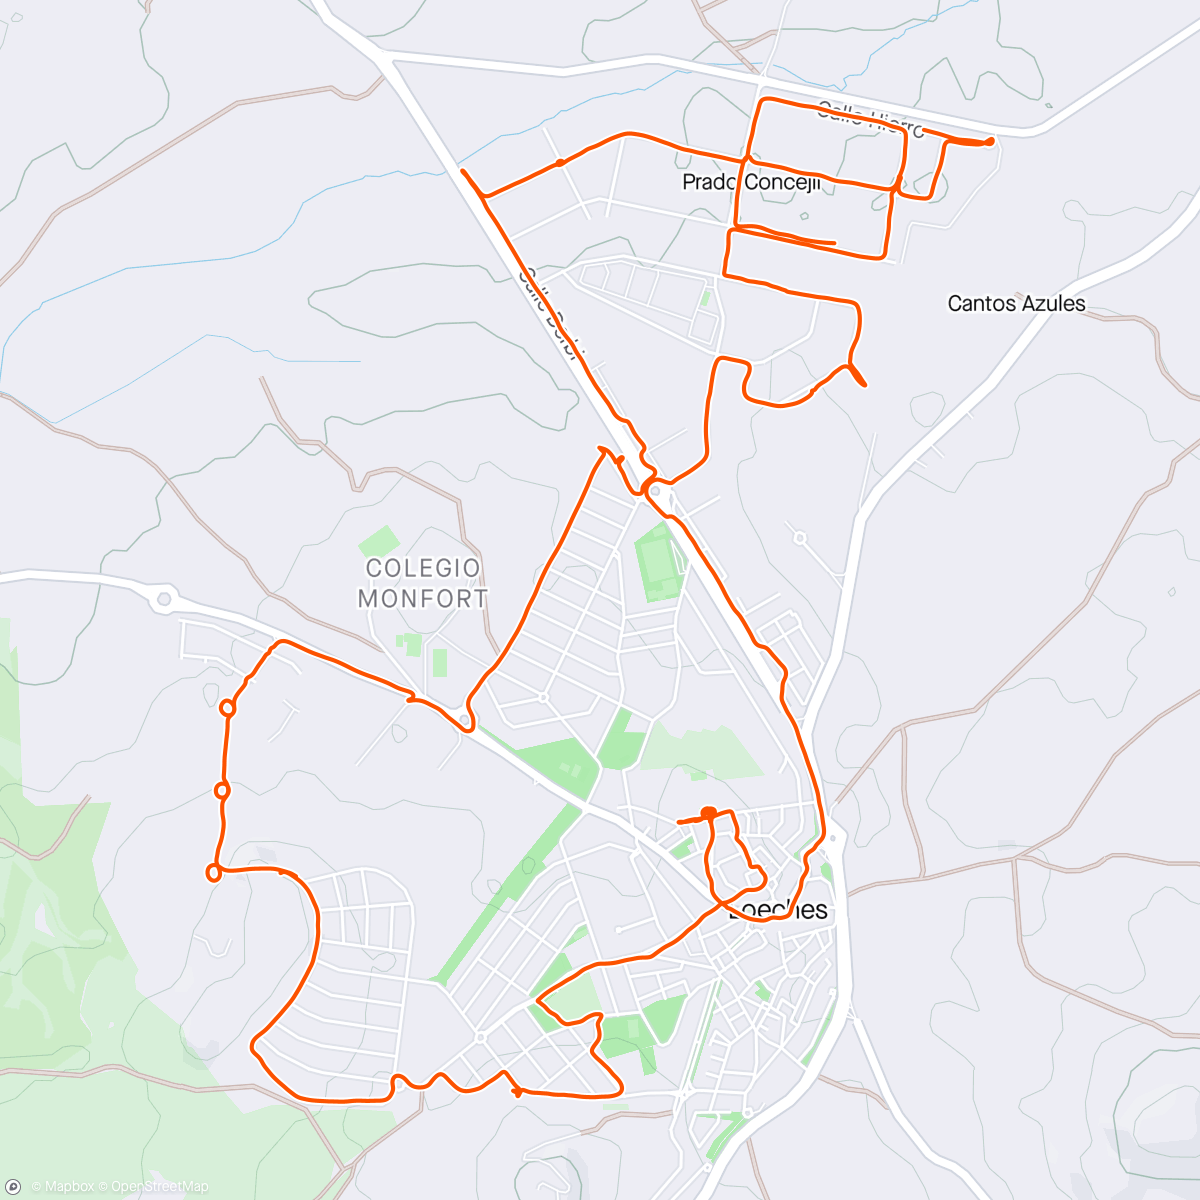 Map of the activity, Volta de bicicleta ao anoitecer